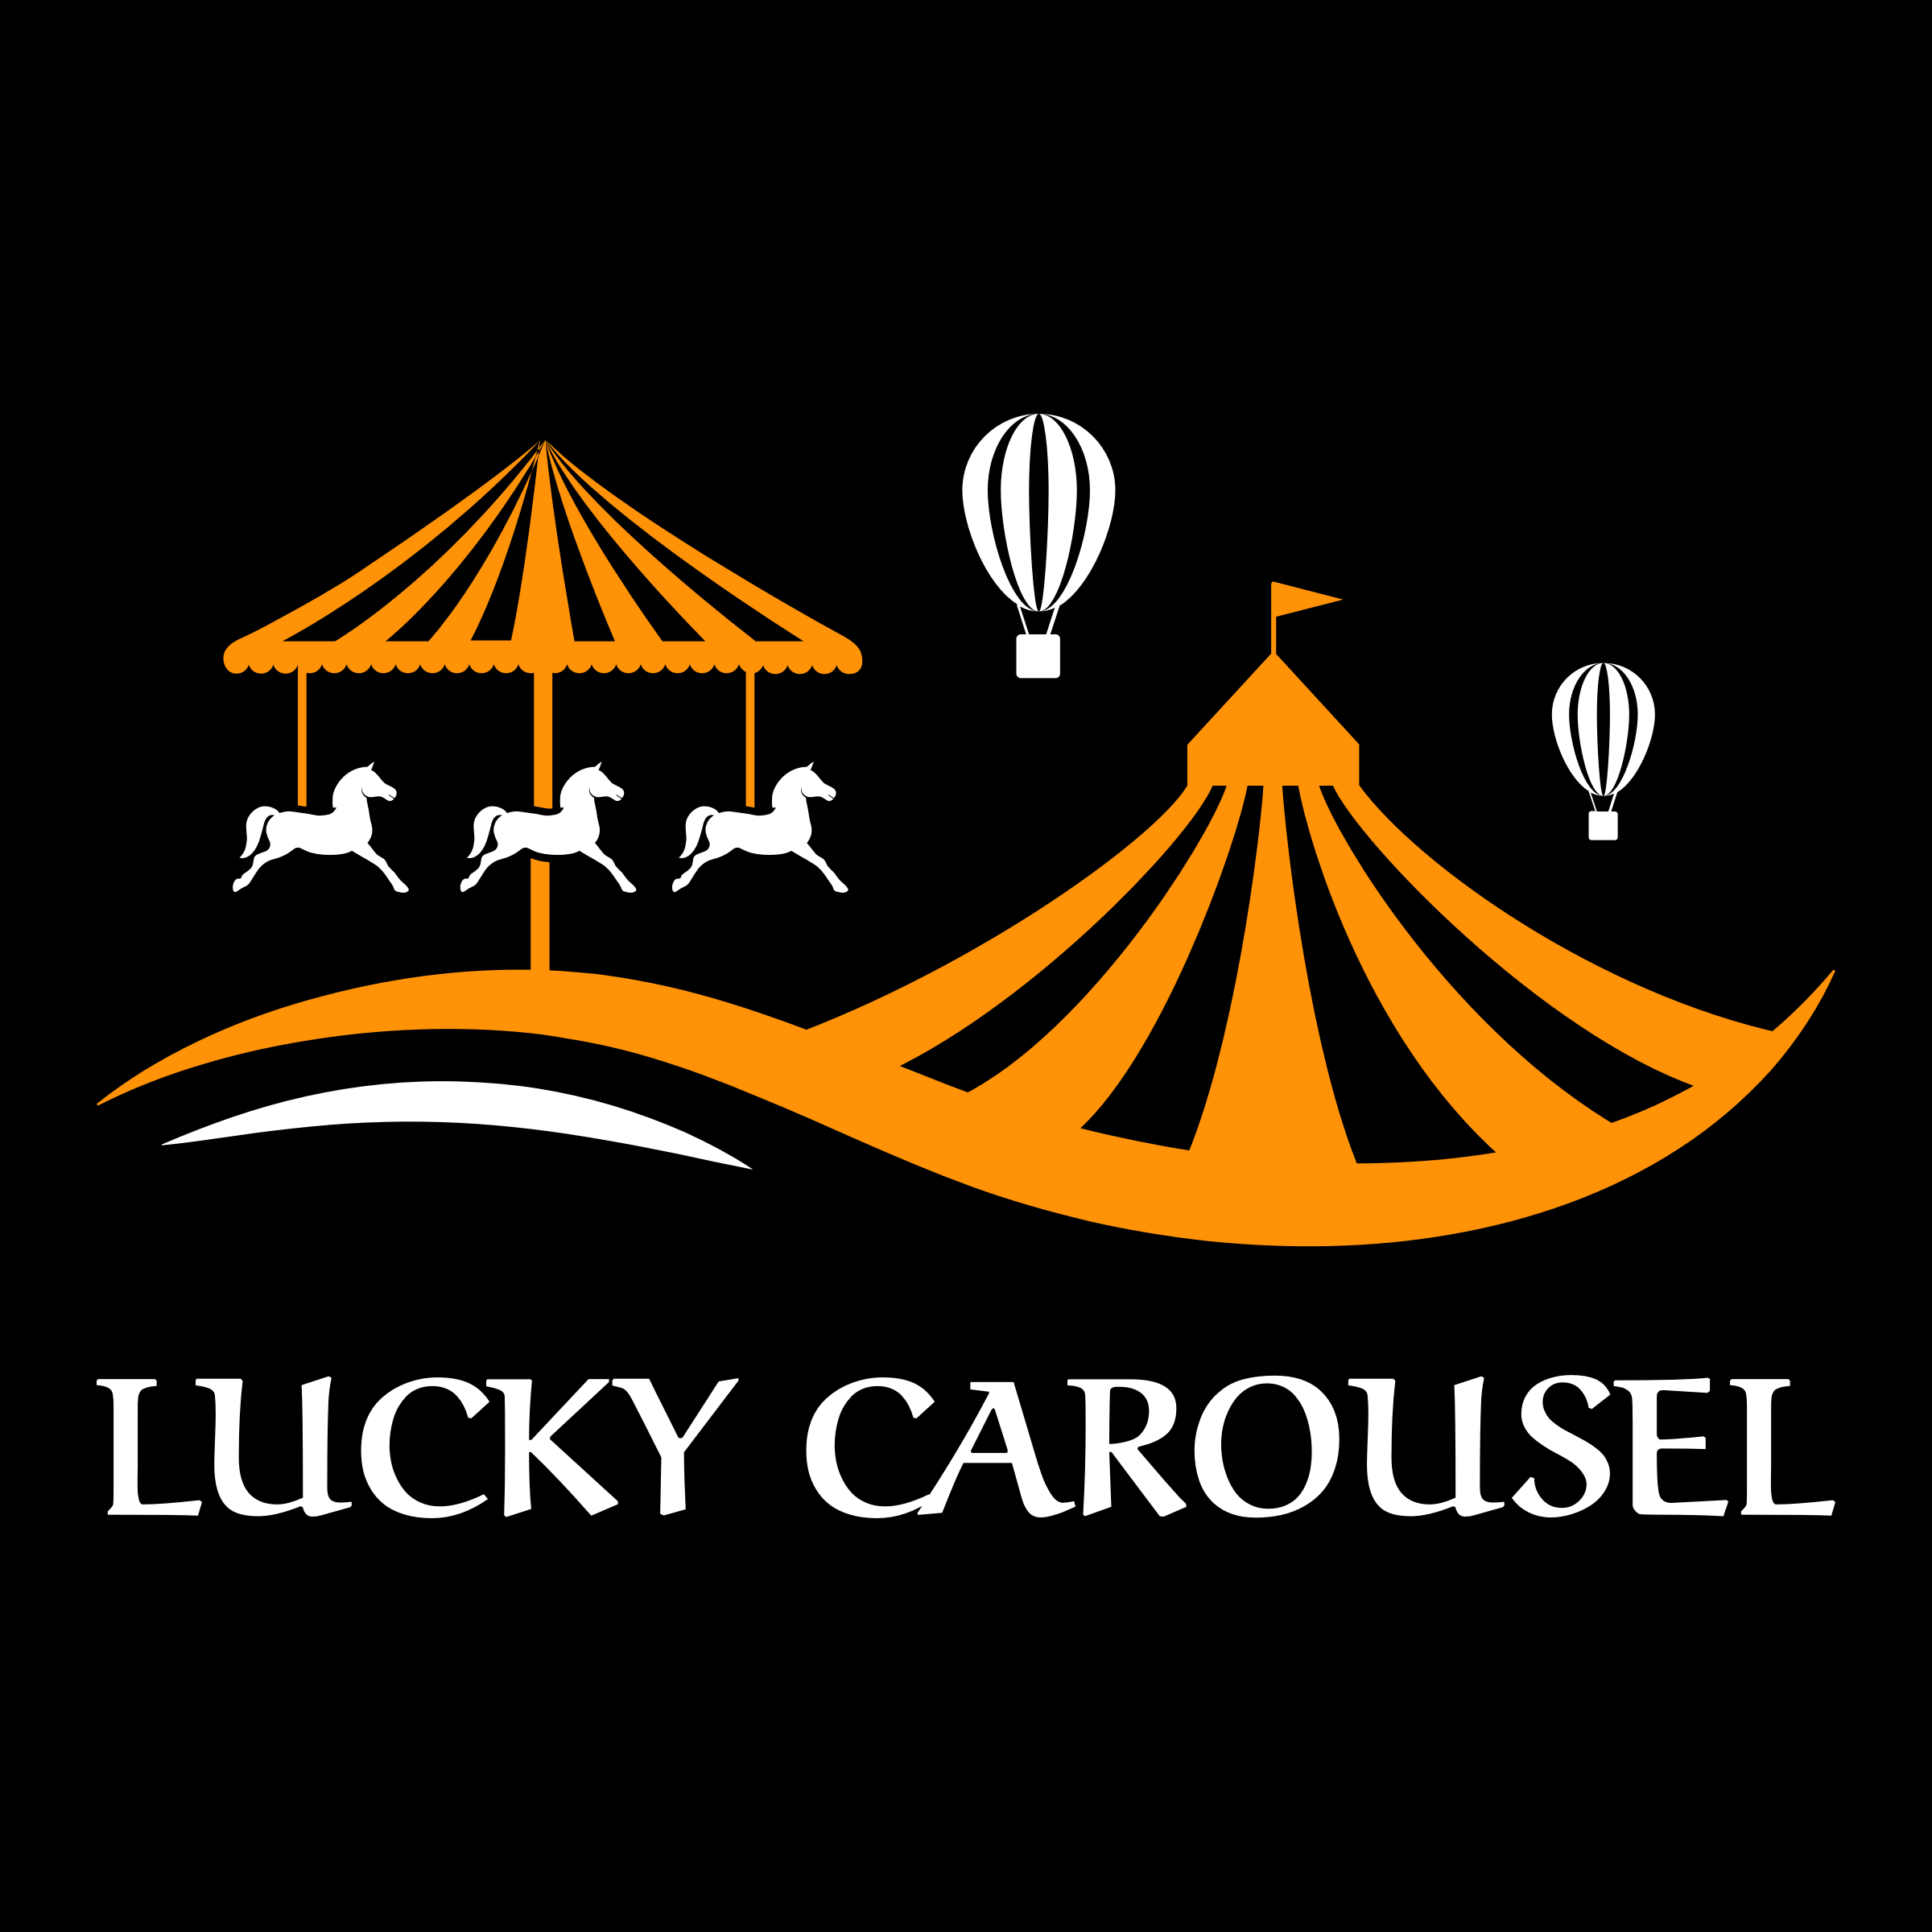 carnival logo design